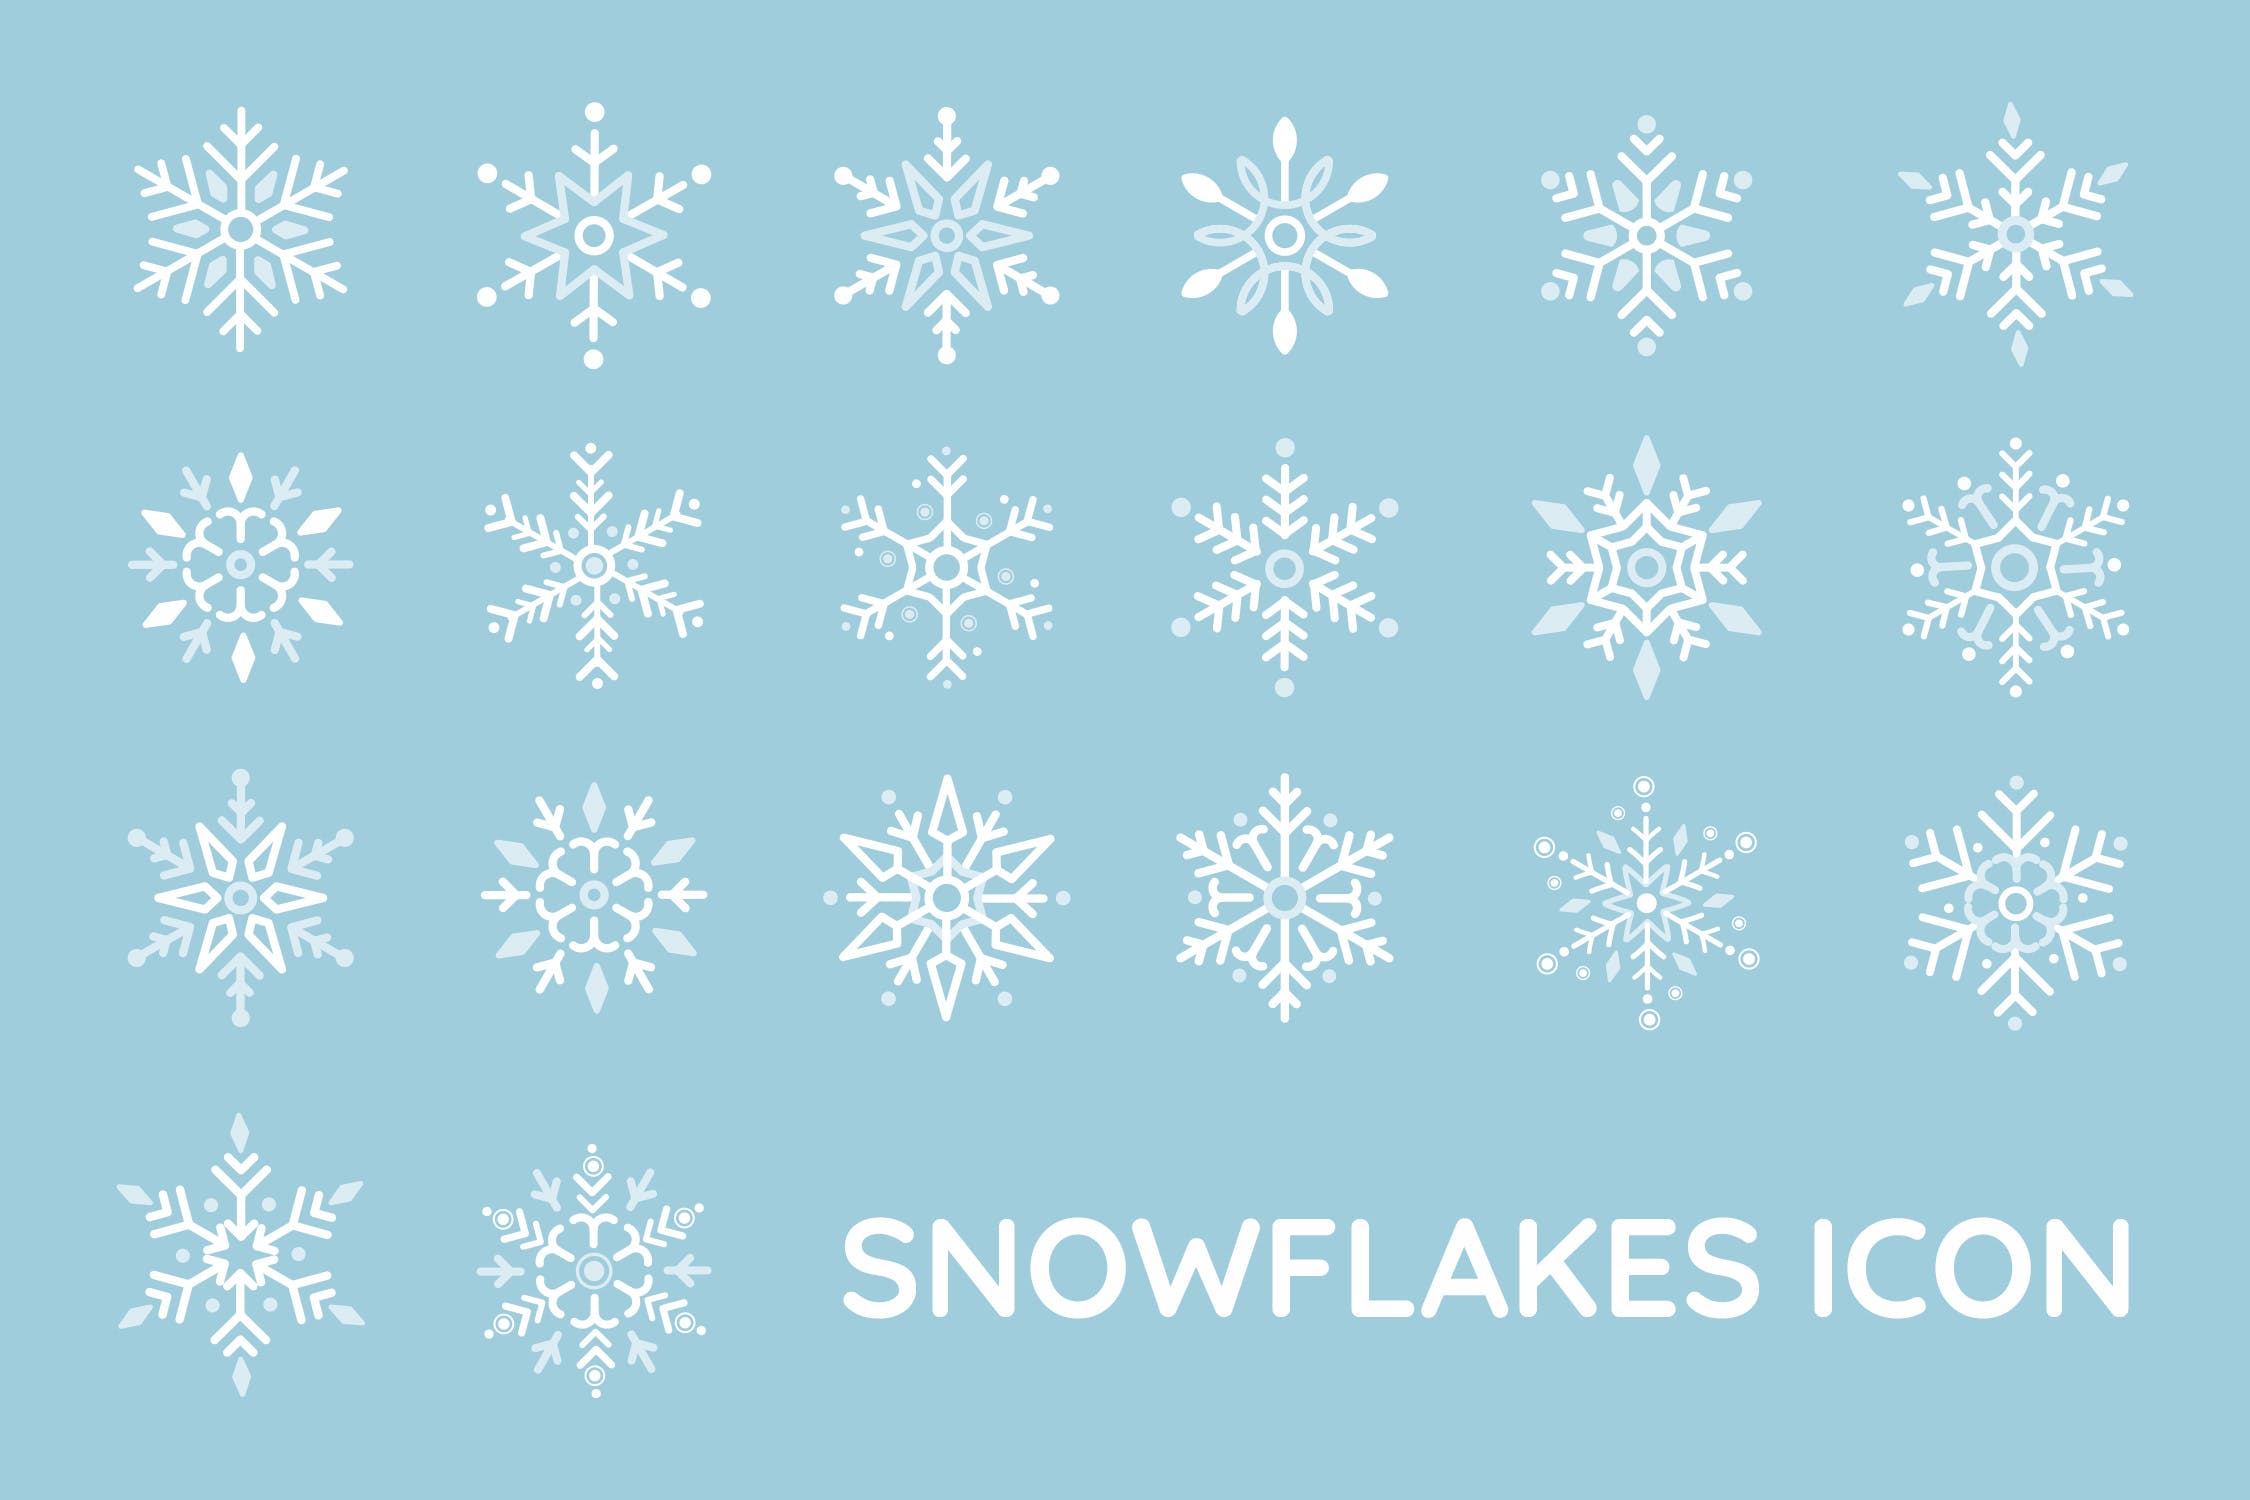 20种雪花图形矢量第一素材精选图标 Snowflakes Icon插图